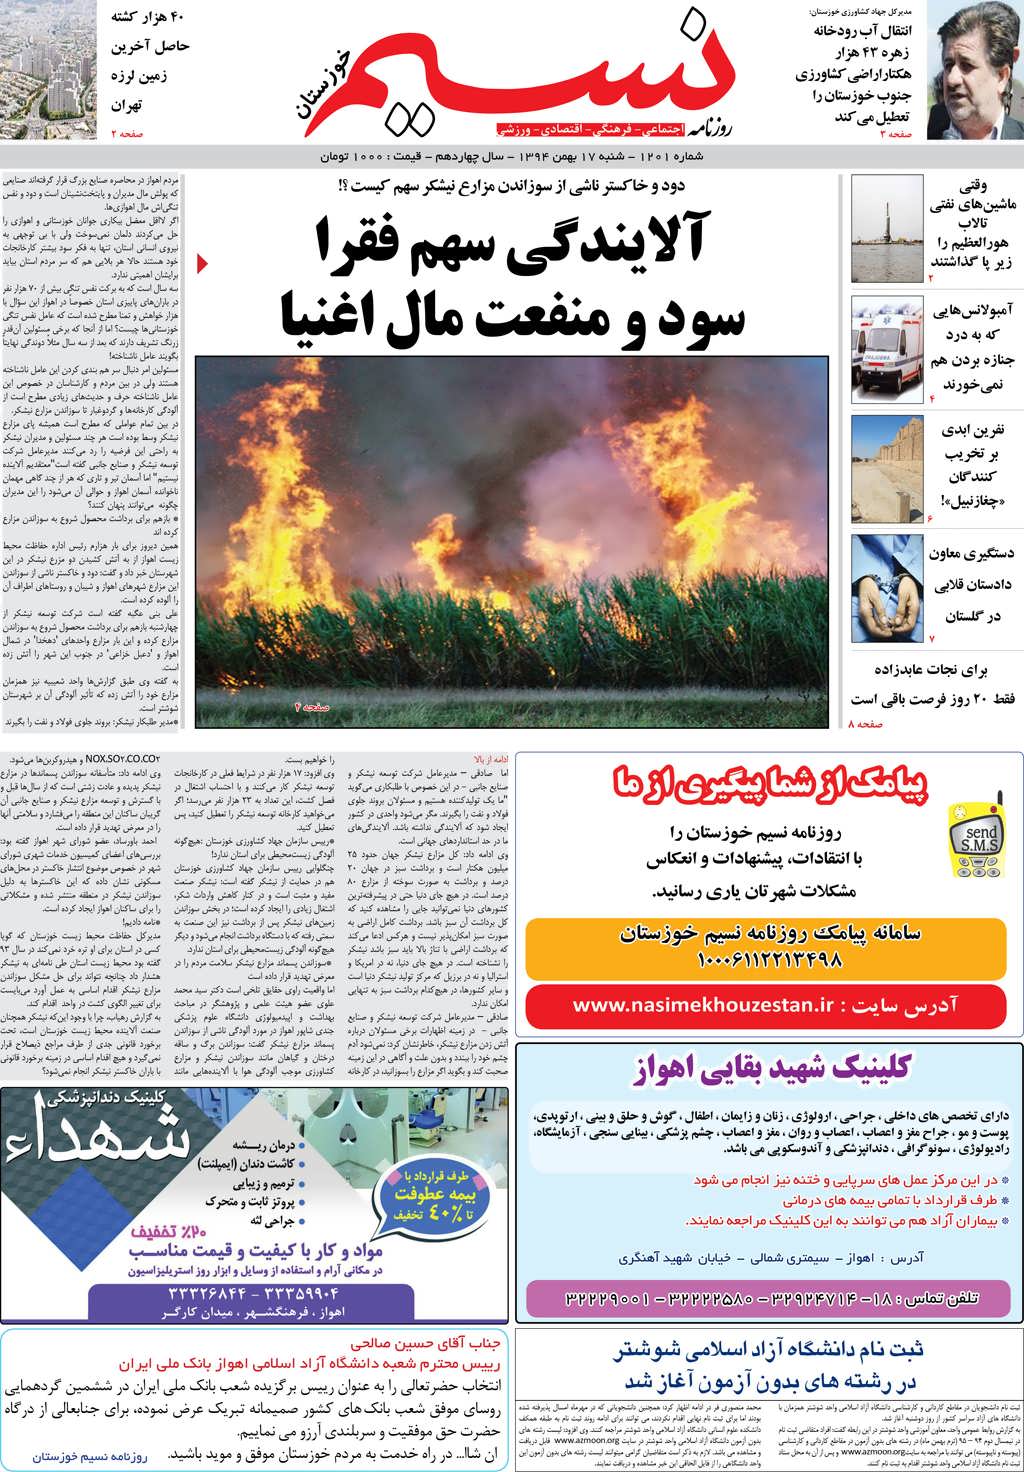 صفحه اصلی روزنامه نسیم شماره 1201